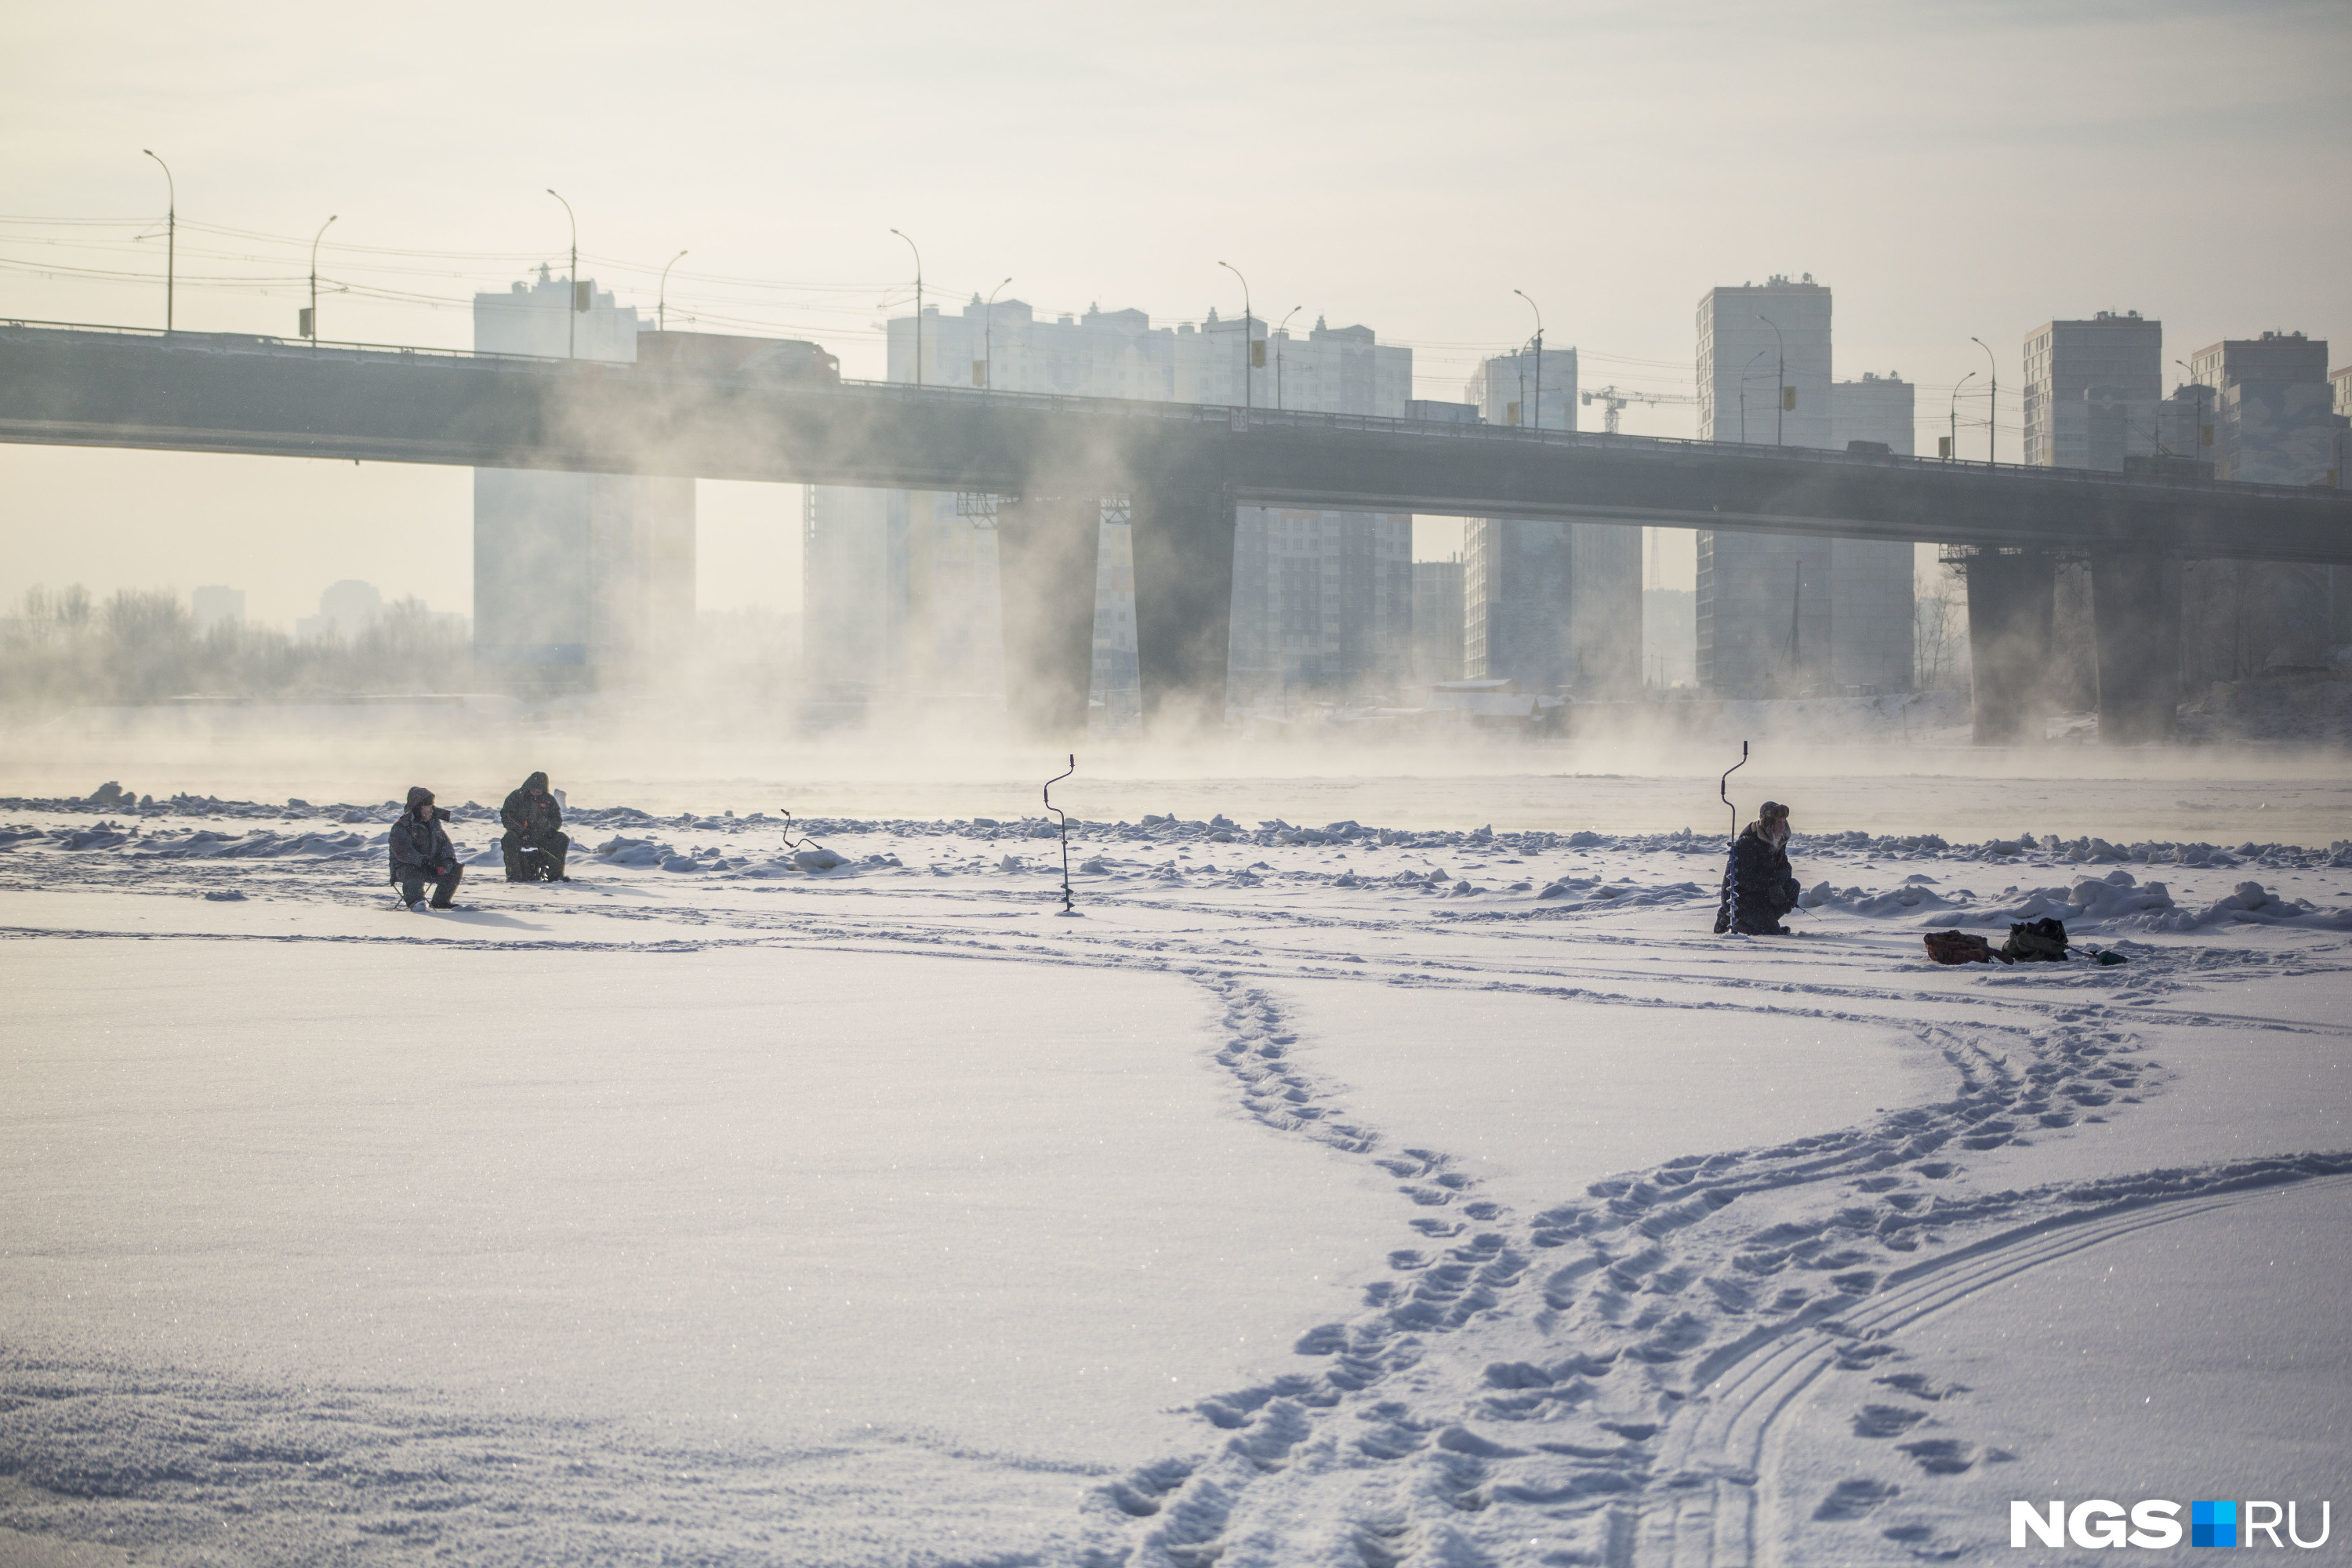 МЧС пригрозило рыбакам штрафами за выход на лёд